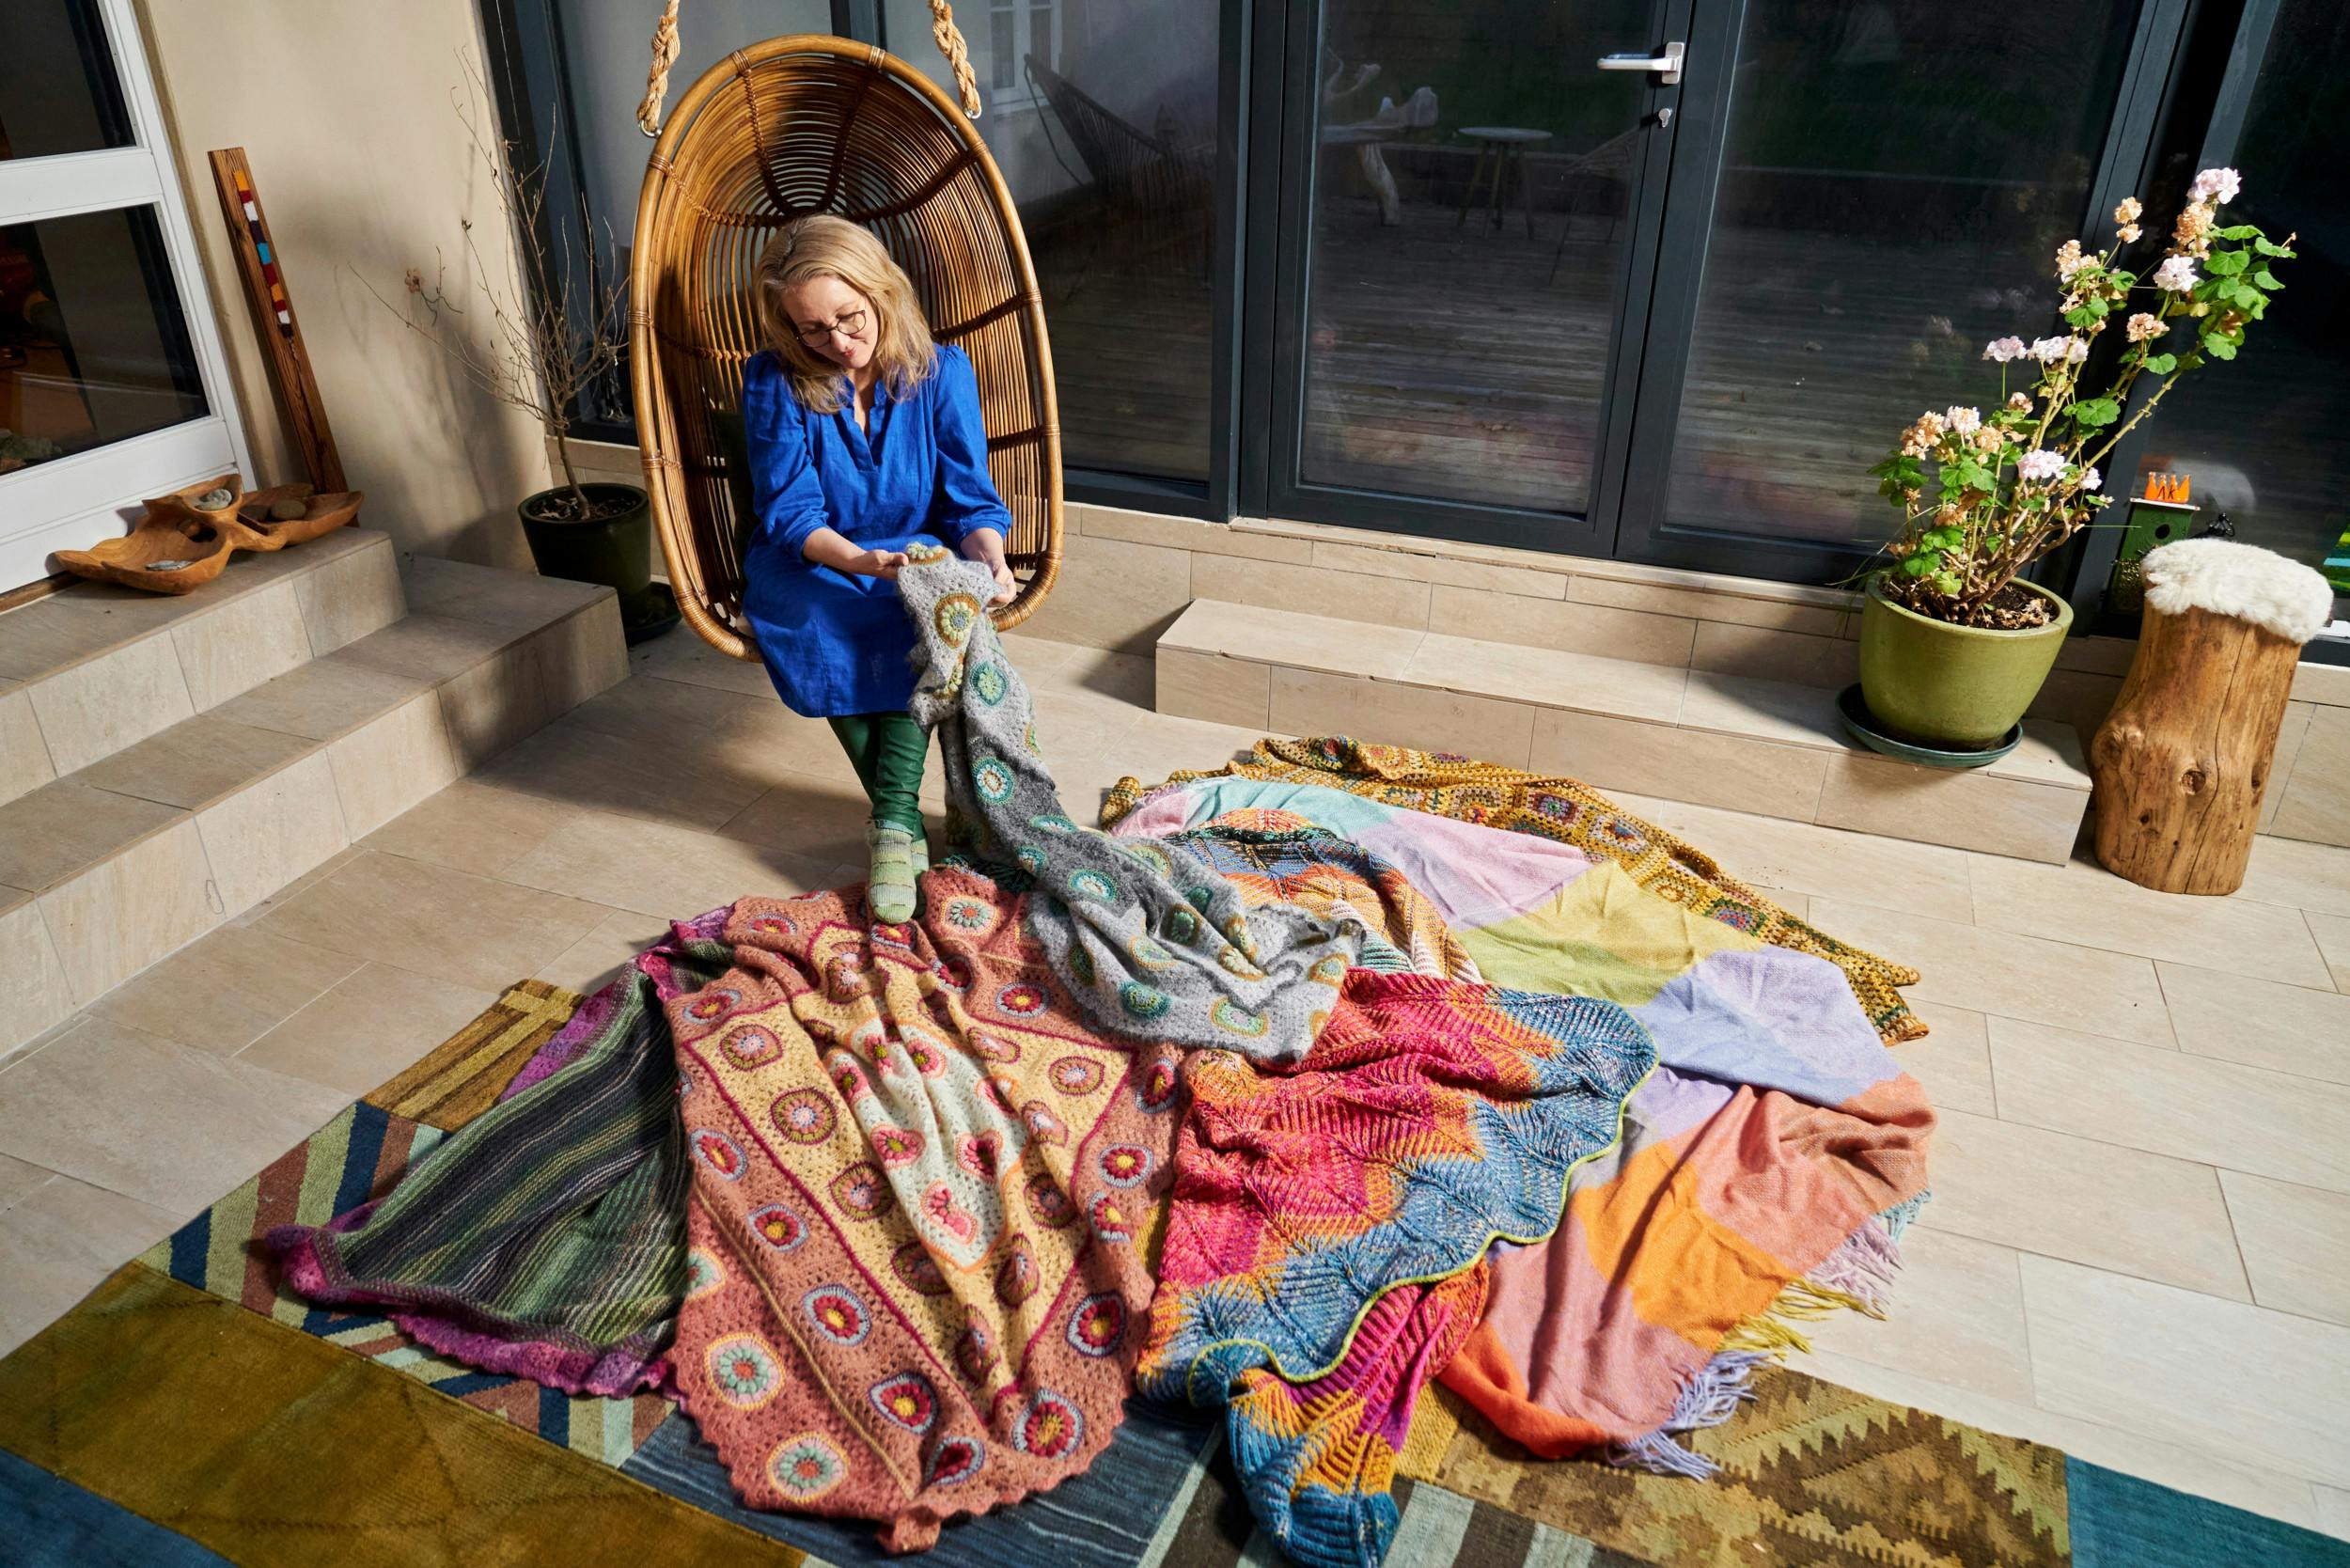 Tæpper er en af Anne Kirketerps yndlingsbeskæftigelser, her ses et udsnit af nogle af de tæpper, hun har hæklet, strikket og vævet.